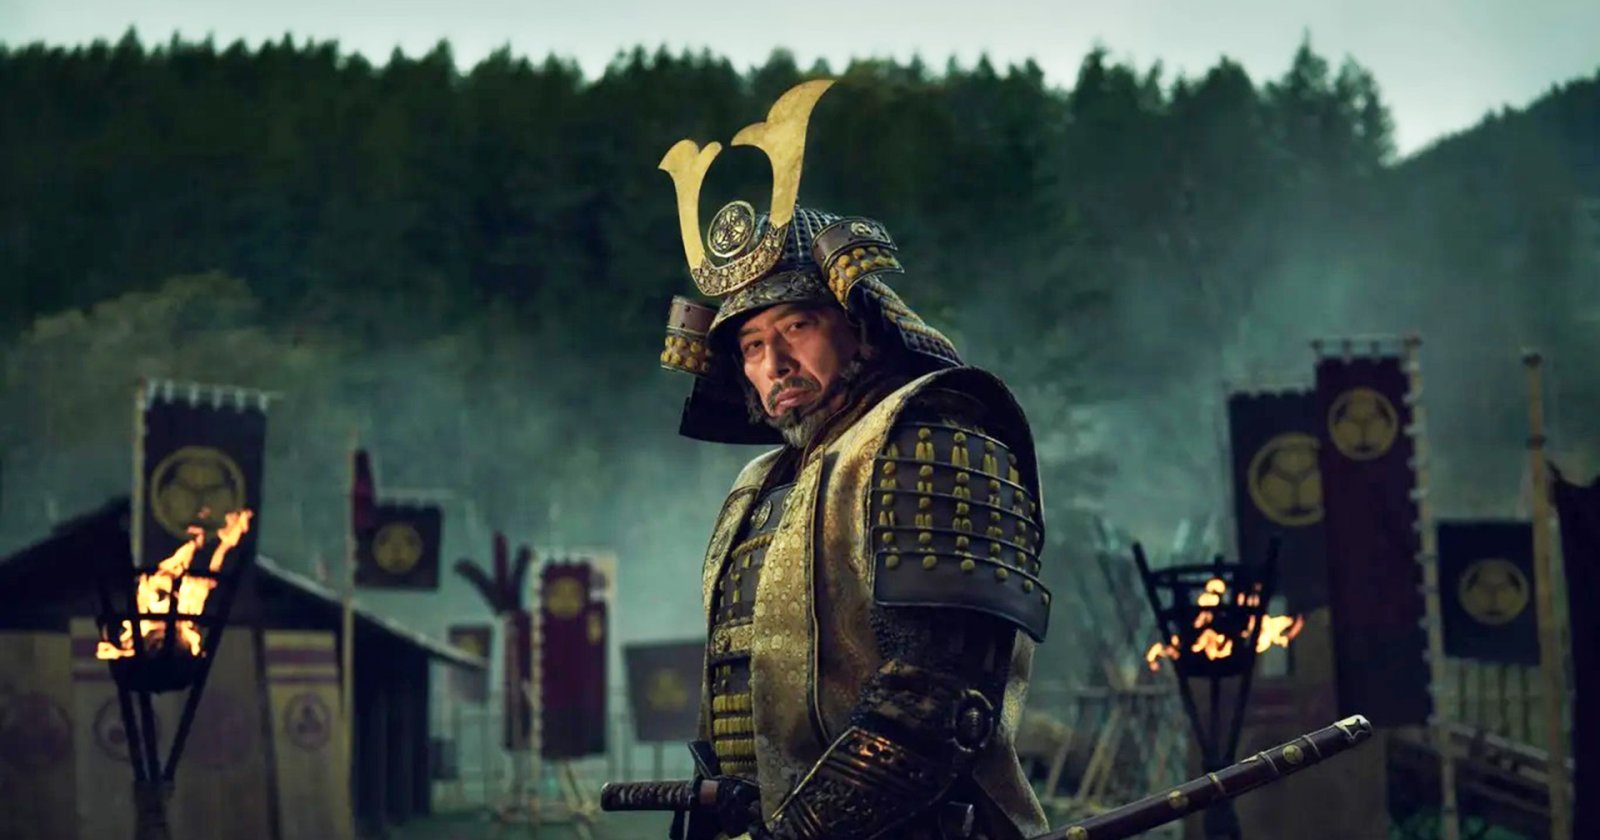 ซีรีส์ ‘Shōgun’ ได้คะแนนรีวิวยอดเยี่ยม 100% ระดับเดียวกับ ‘Game of Thrones’